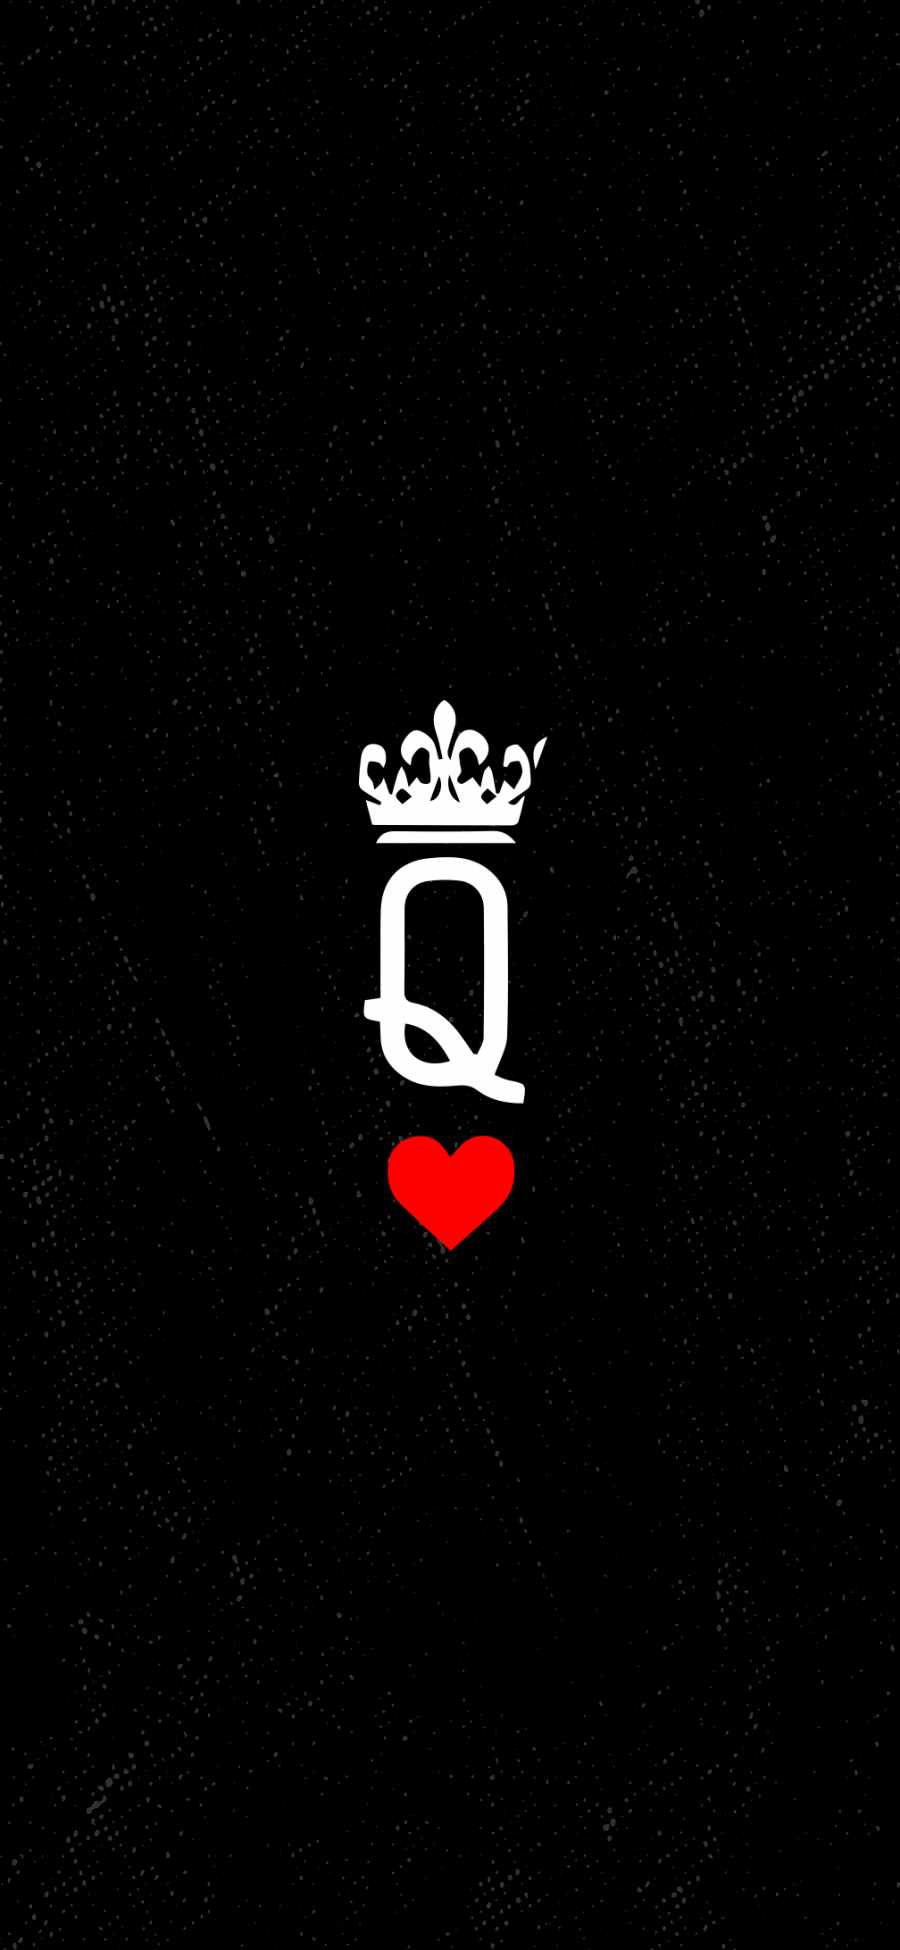 Queen HD iPhone Wallpaper